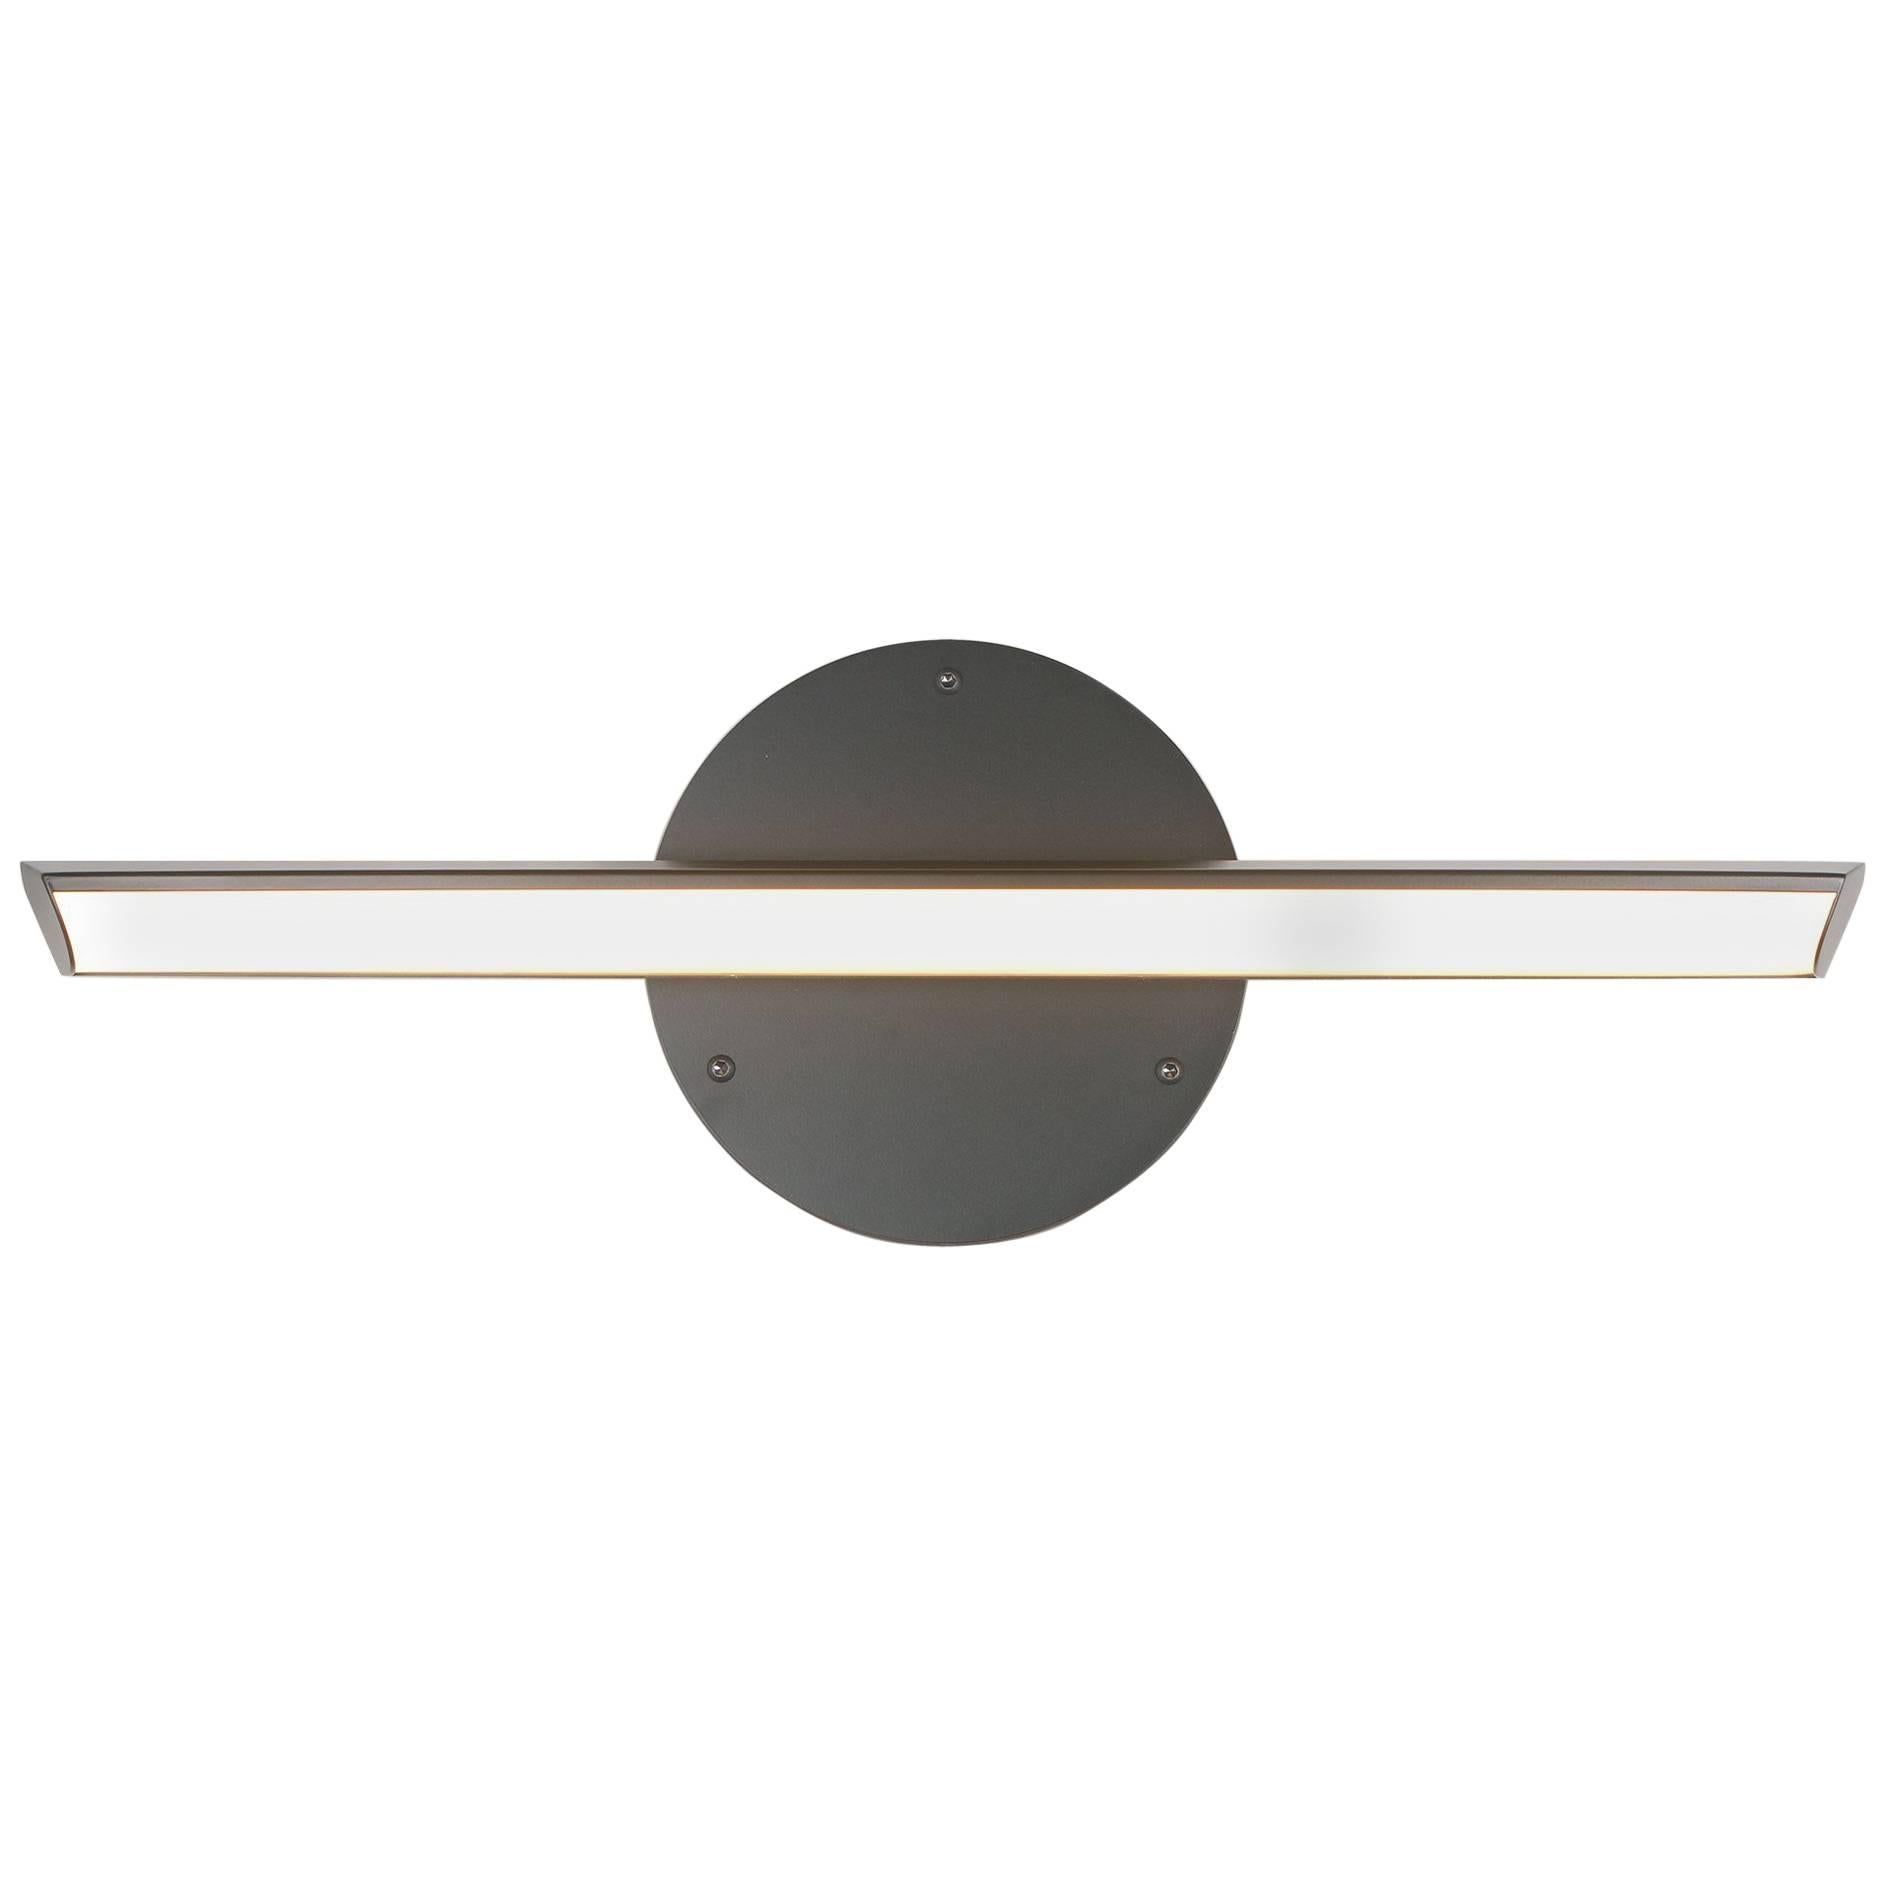 CHIME SOLO 23 - Black Horizontal Geometric Modern LED Sconce Light Fixture